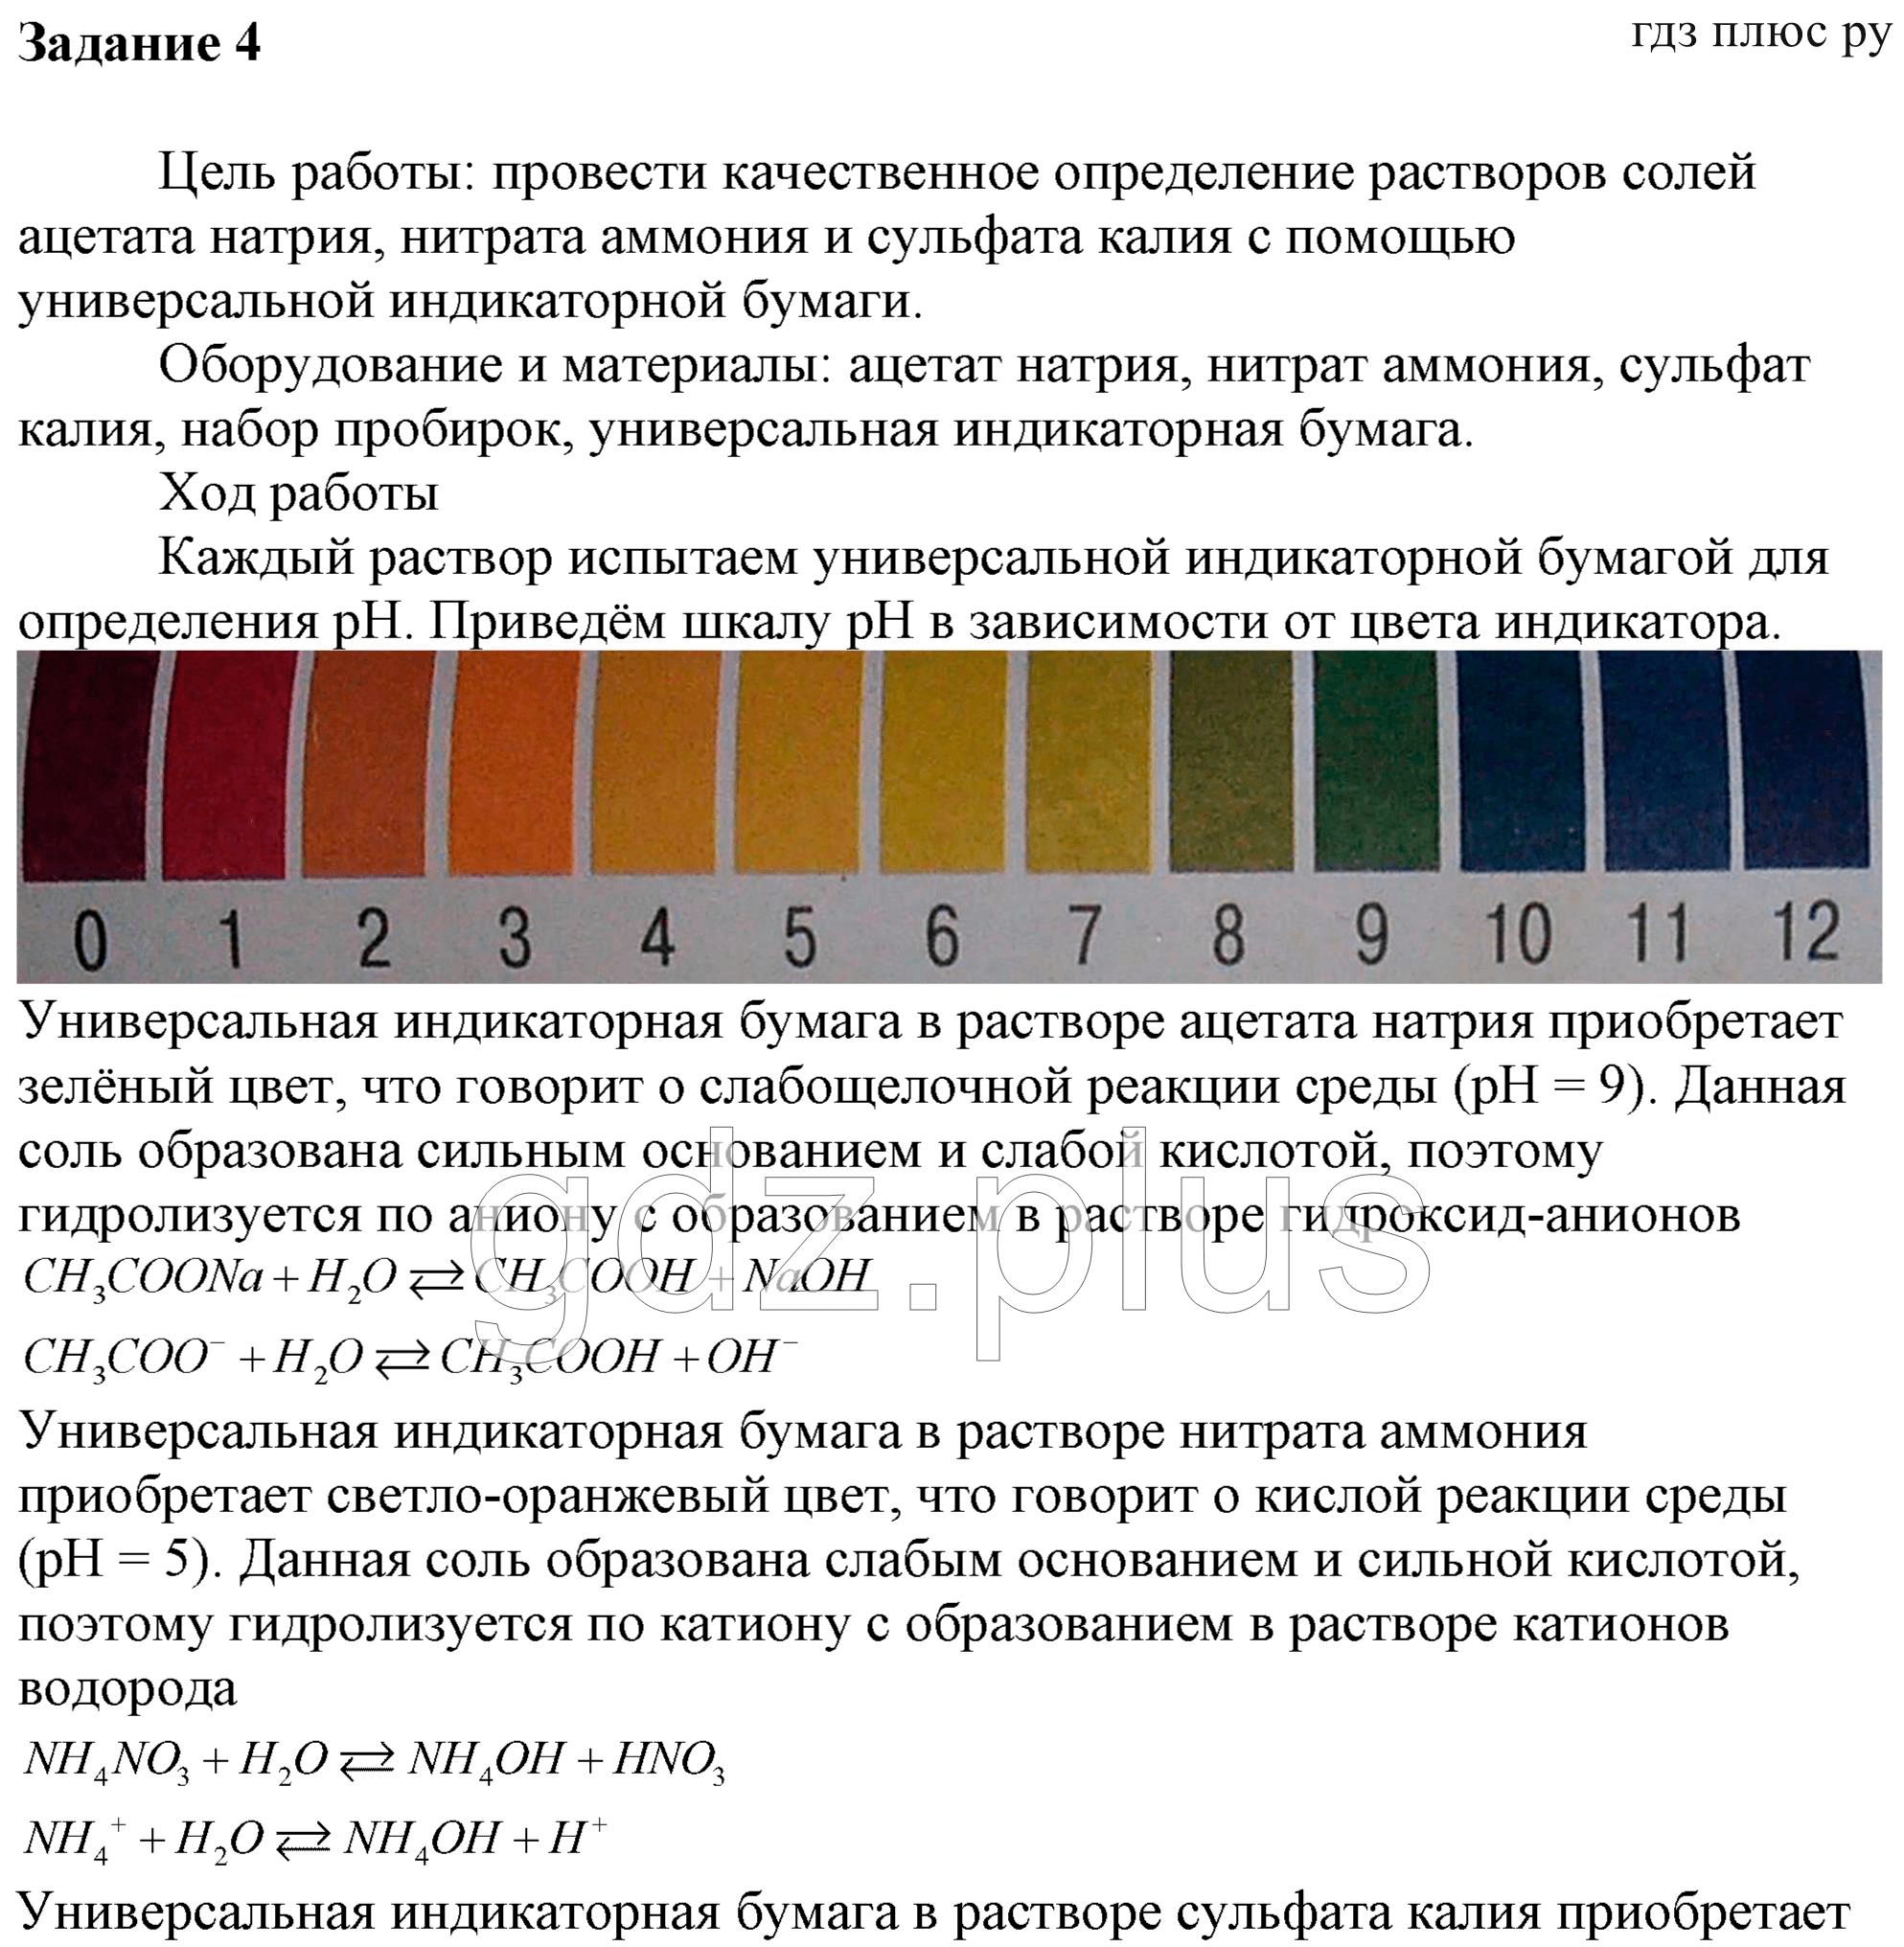 Гидроксид калия среда ph. Нитрат калия цвет раствора. Универсальная индикаторная бумага. Нитрат натрия цвет раствора. Определение реакции среды в растворах солей.